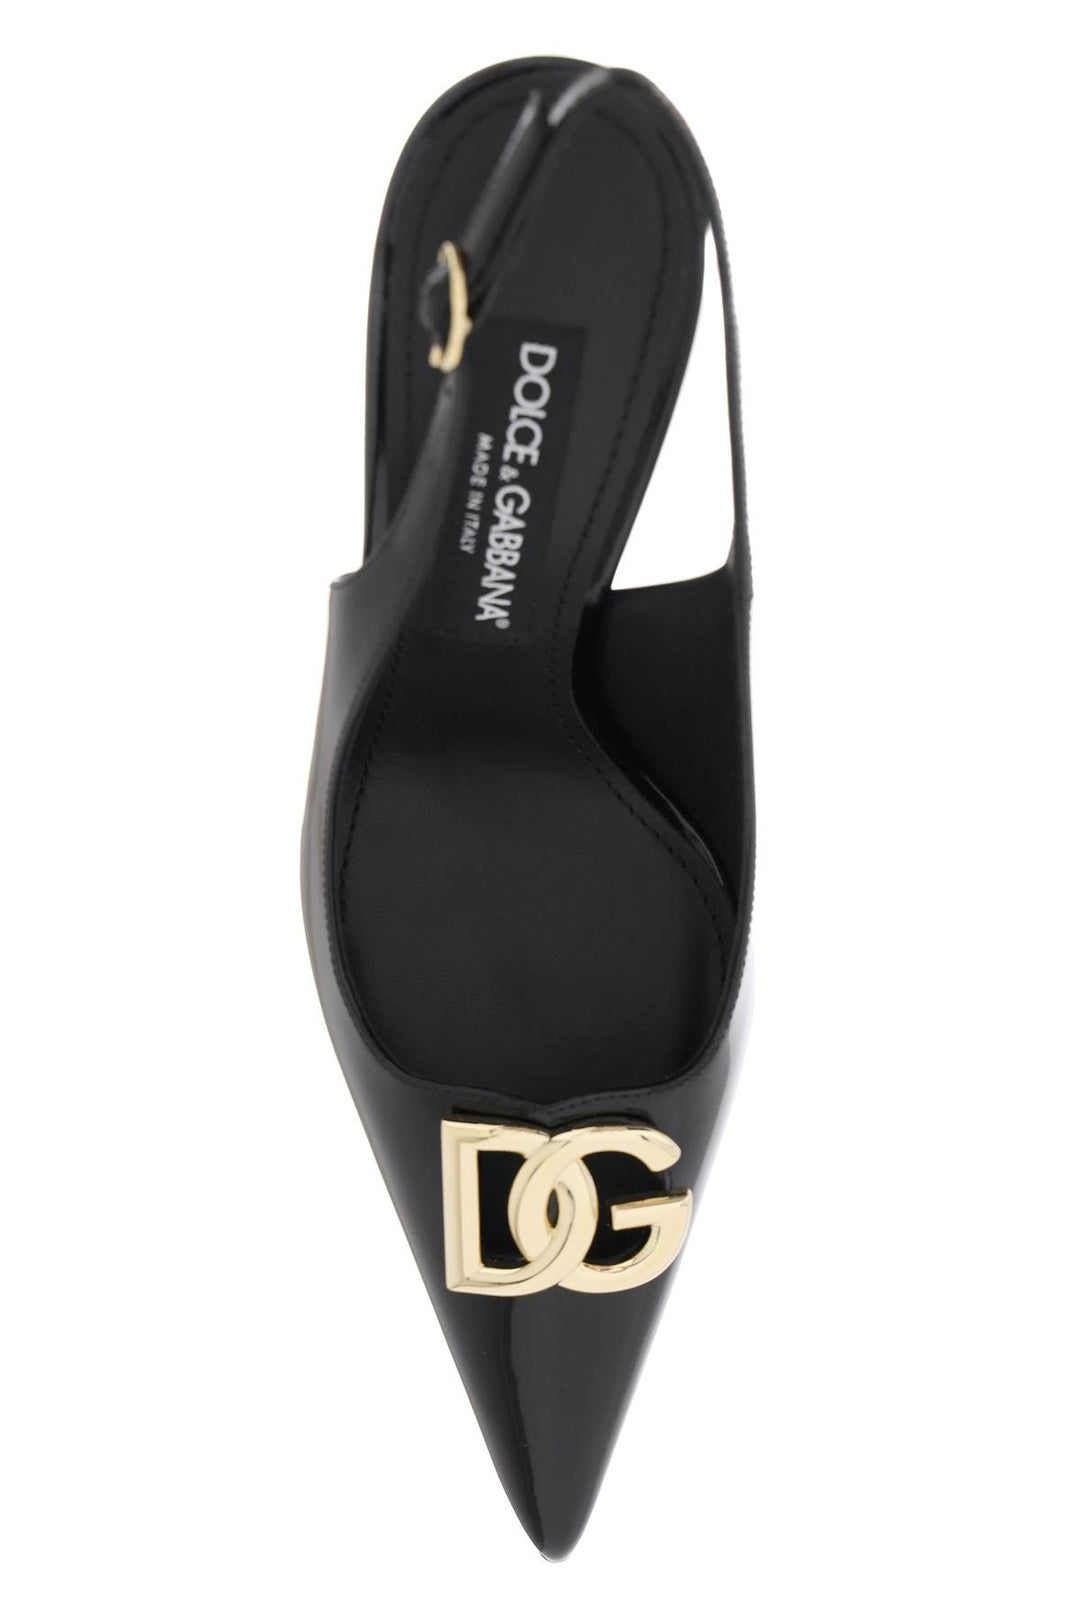 Dolce & Gabbana Glossy Leather Lollo Slingback Pumps   Nero